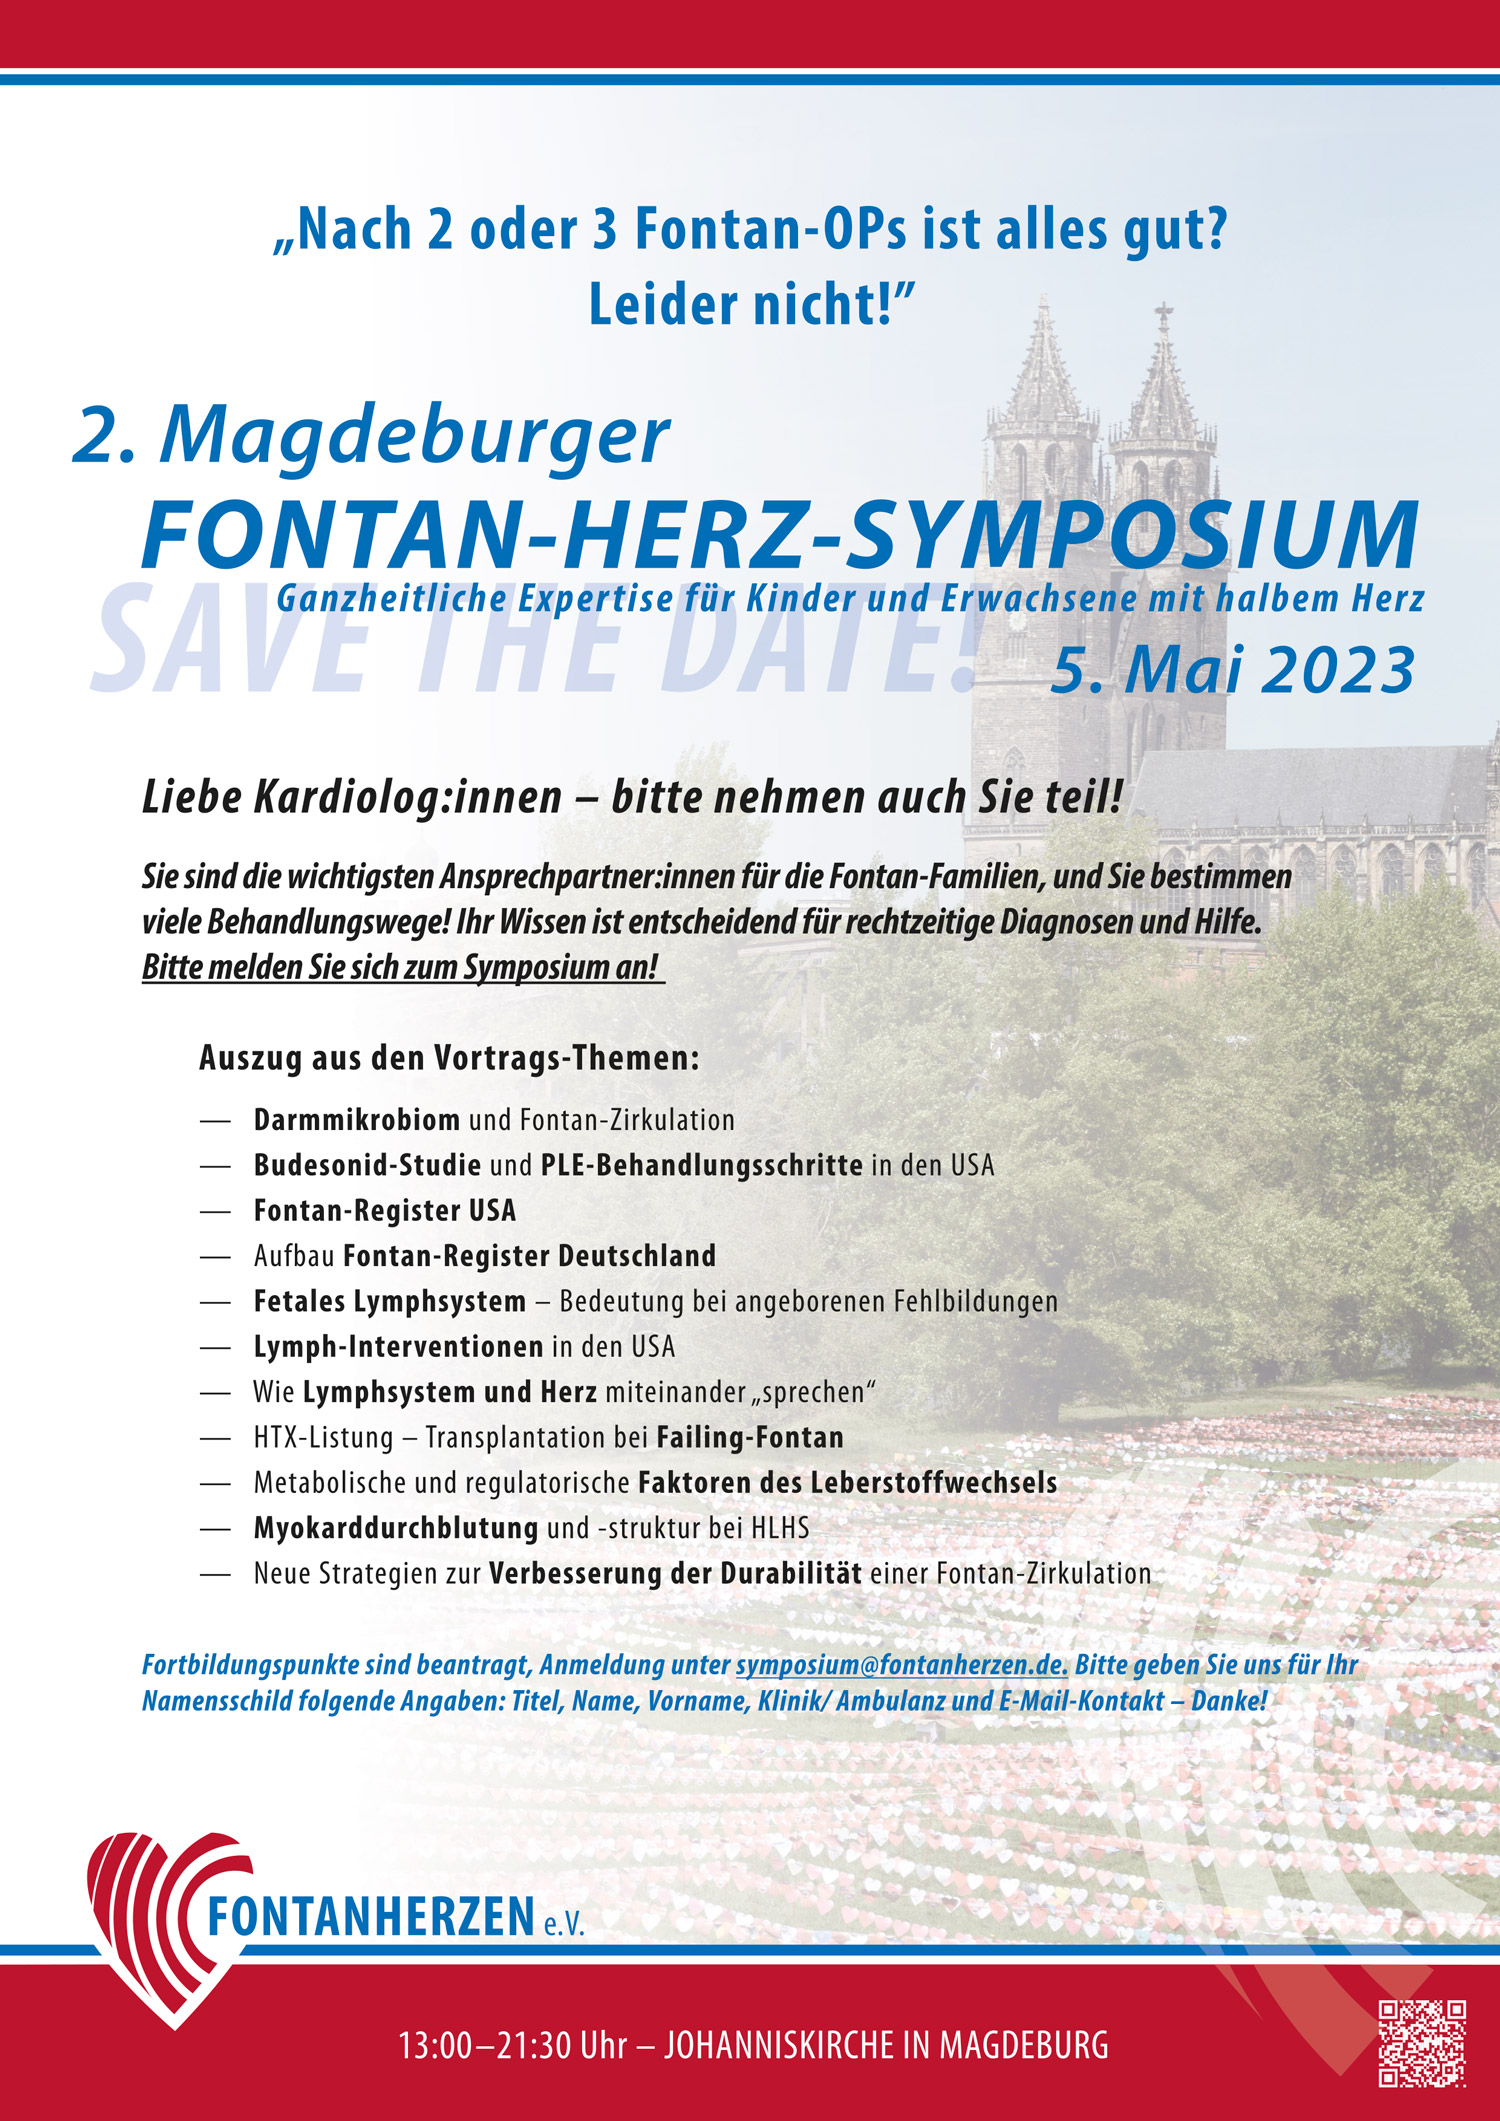 2. Magdeburger Fontan-Herz-Symposium 2023